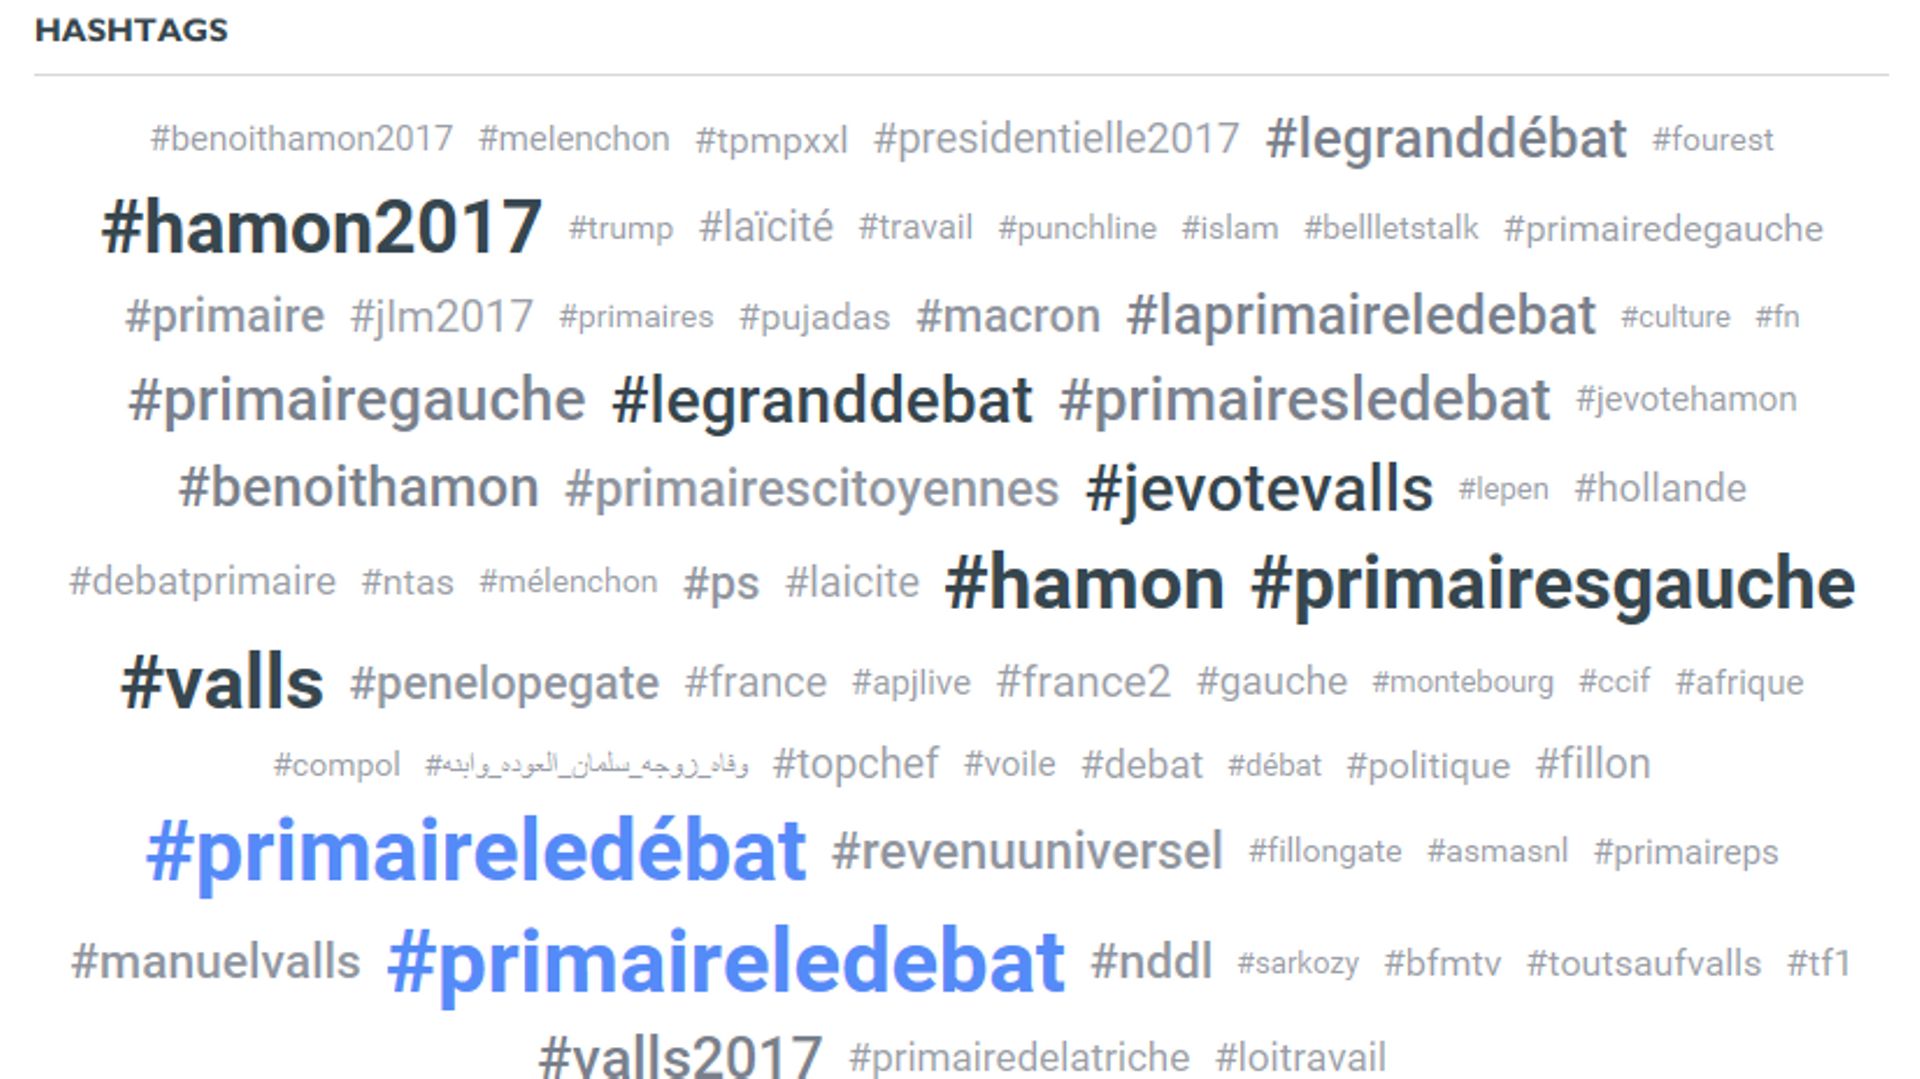 Valls ou Hamon : qui a remporté le débat de la primaire sur Twitter ?